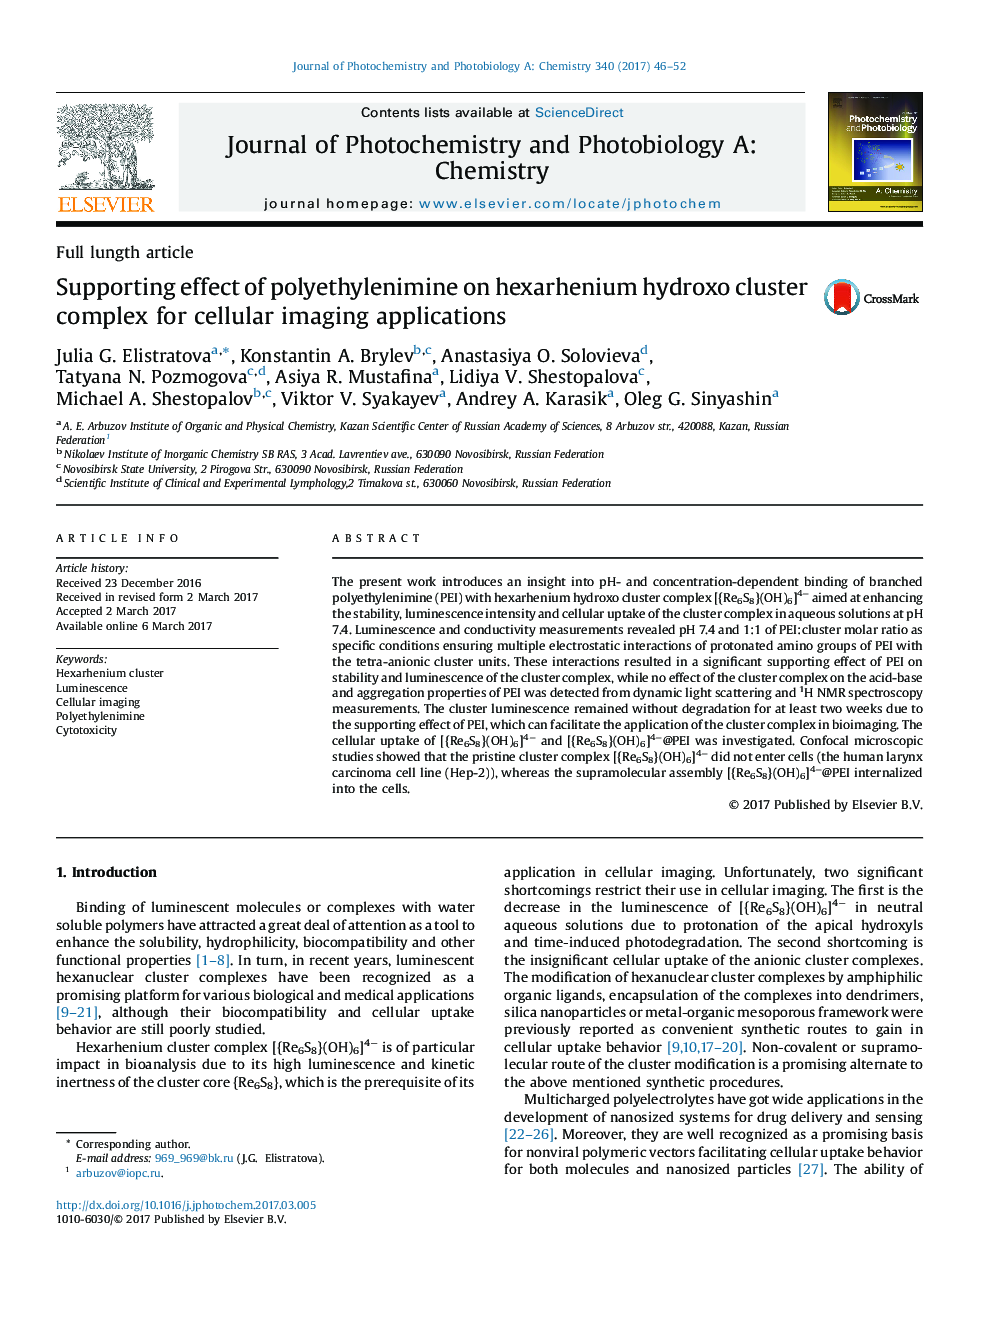 مقاله کامل لوتئین اثرات حمایت از پلی اتیلنیمین در خوشه پیچیده هگزراننیوم هیدروکسی برای برنامه های تصویربرداری سلولی 